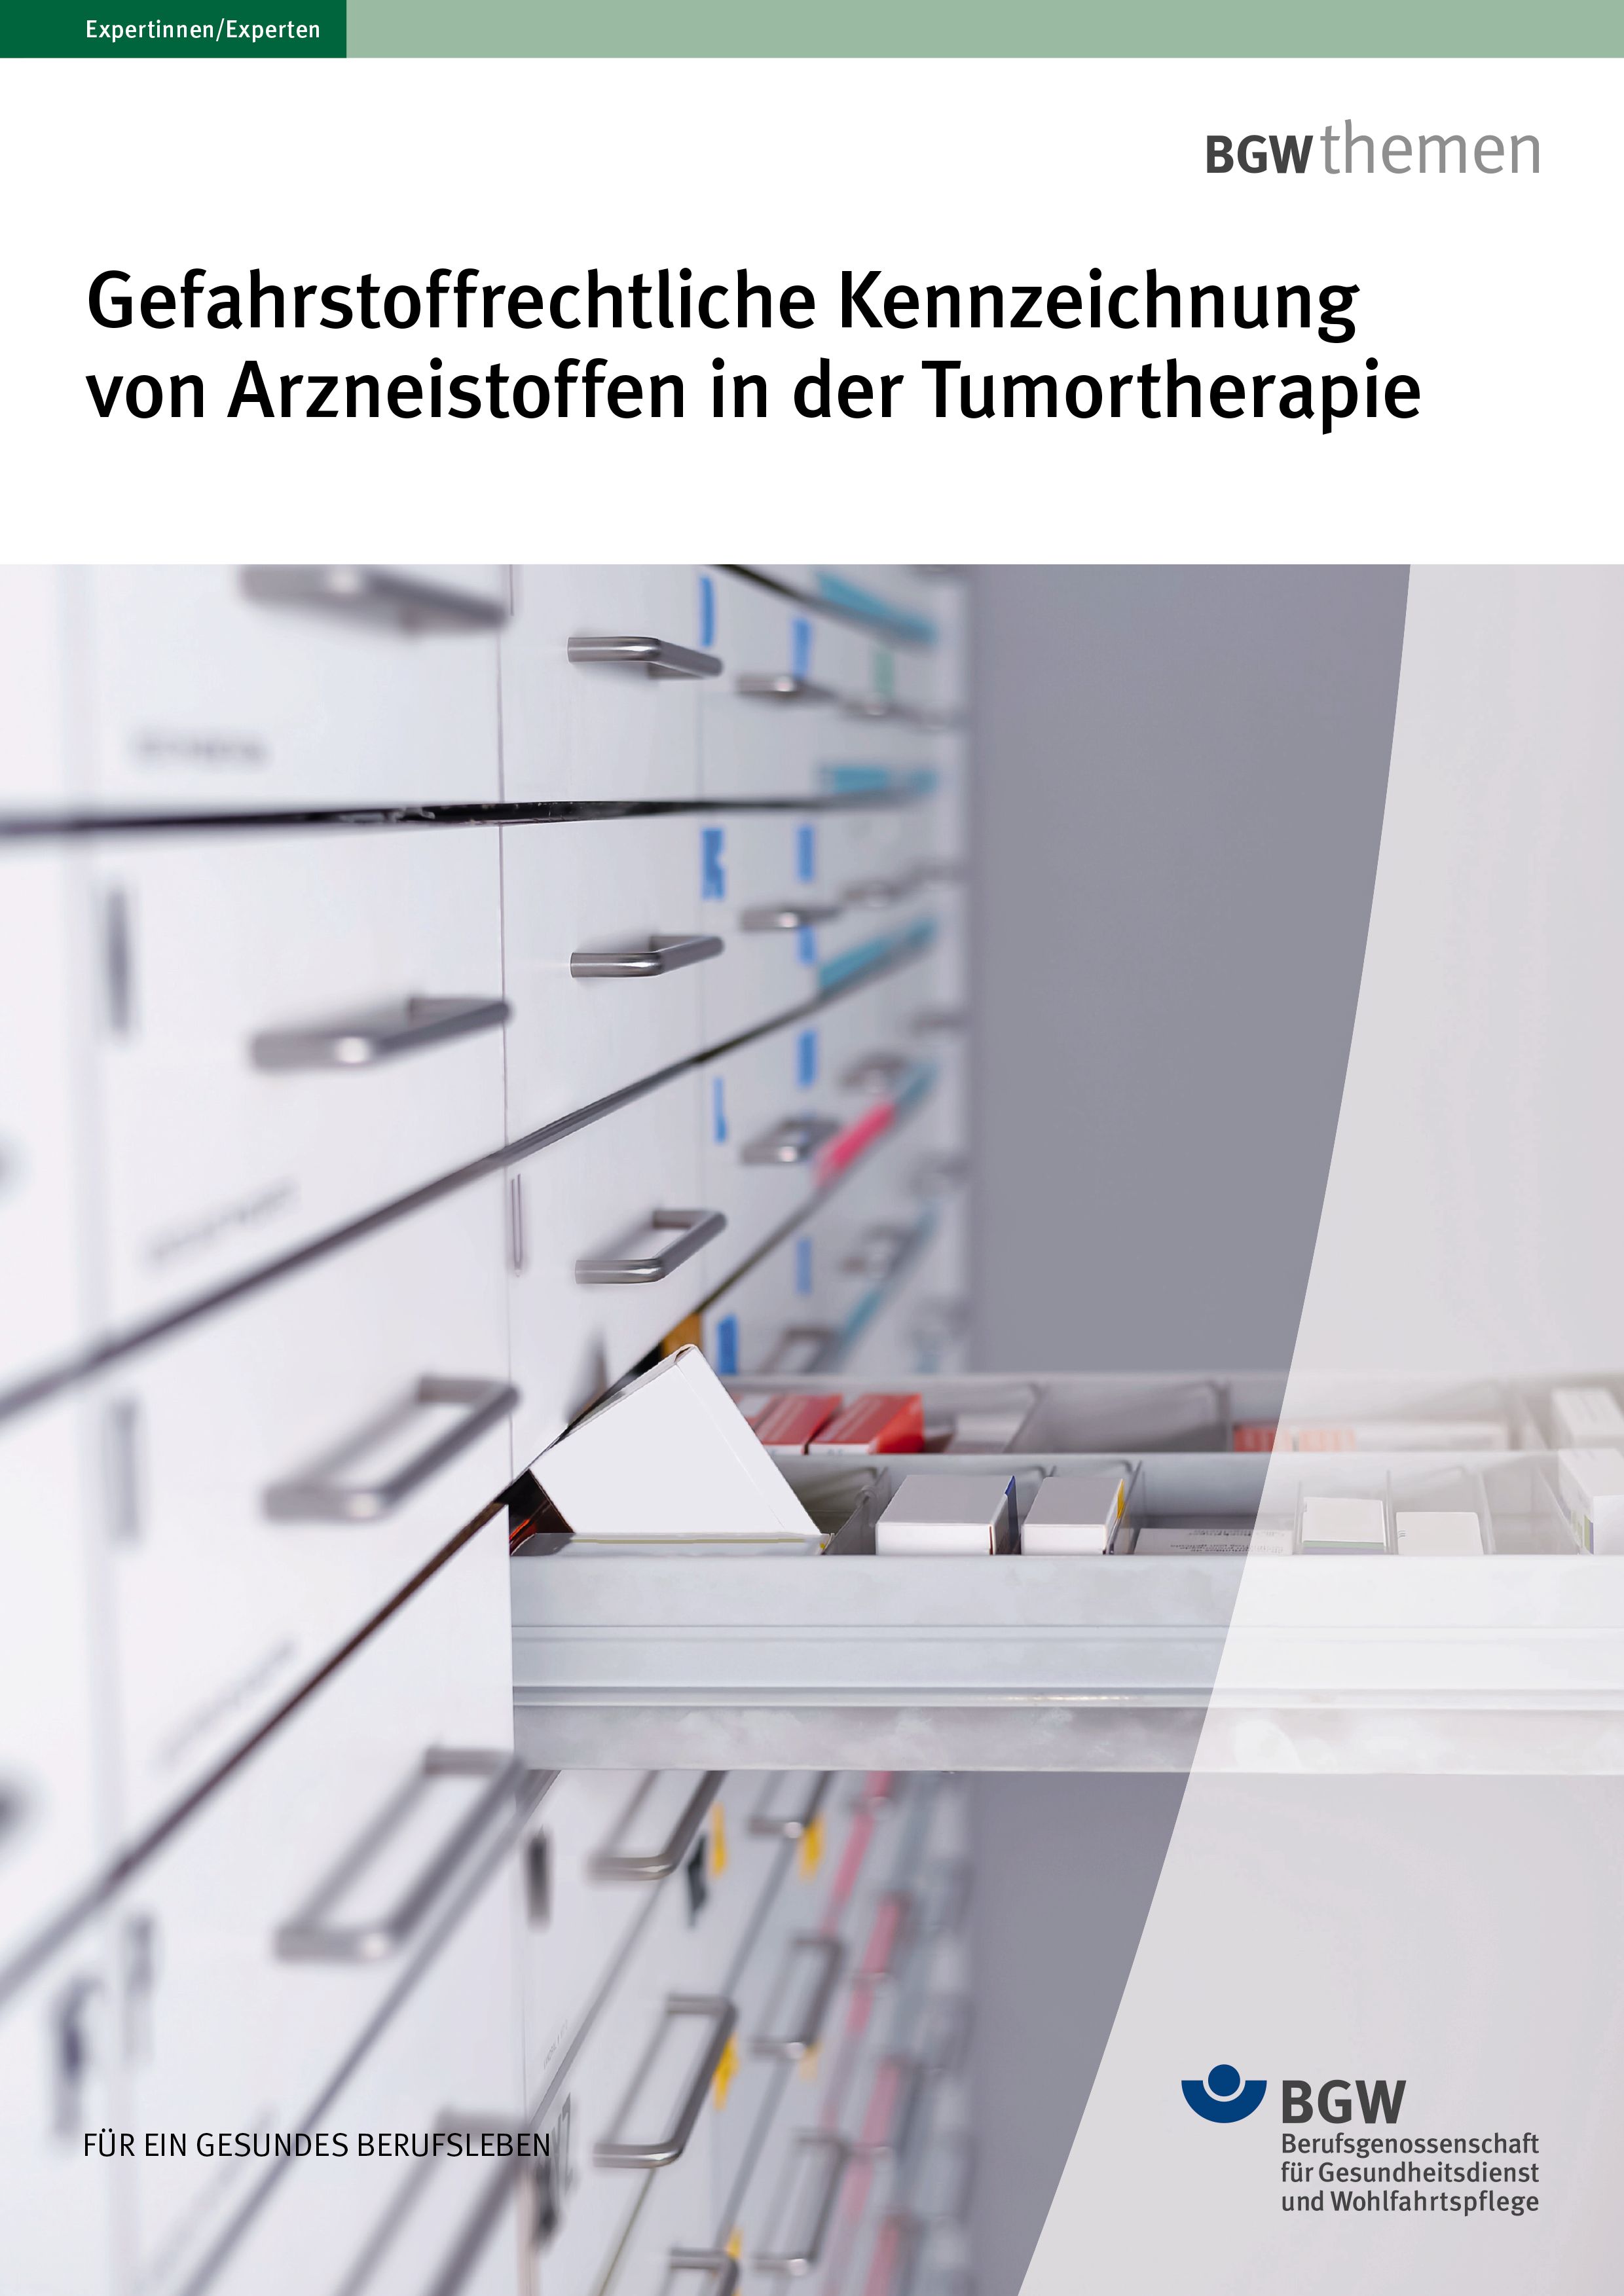 Titel: Gefahrstoffrechtliche Kennzeichnung von Arzneistoffen in der Tumortherapie - Apothekerschrank, eine Schublade geöffnet